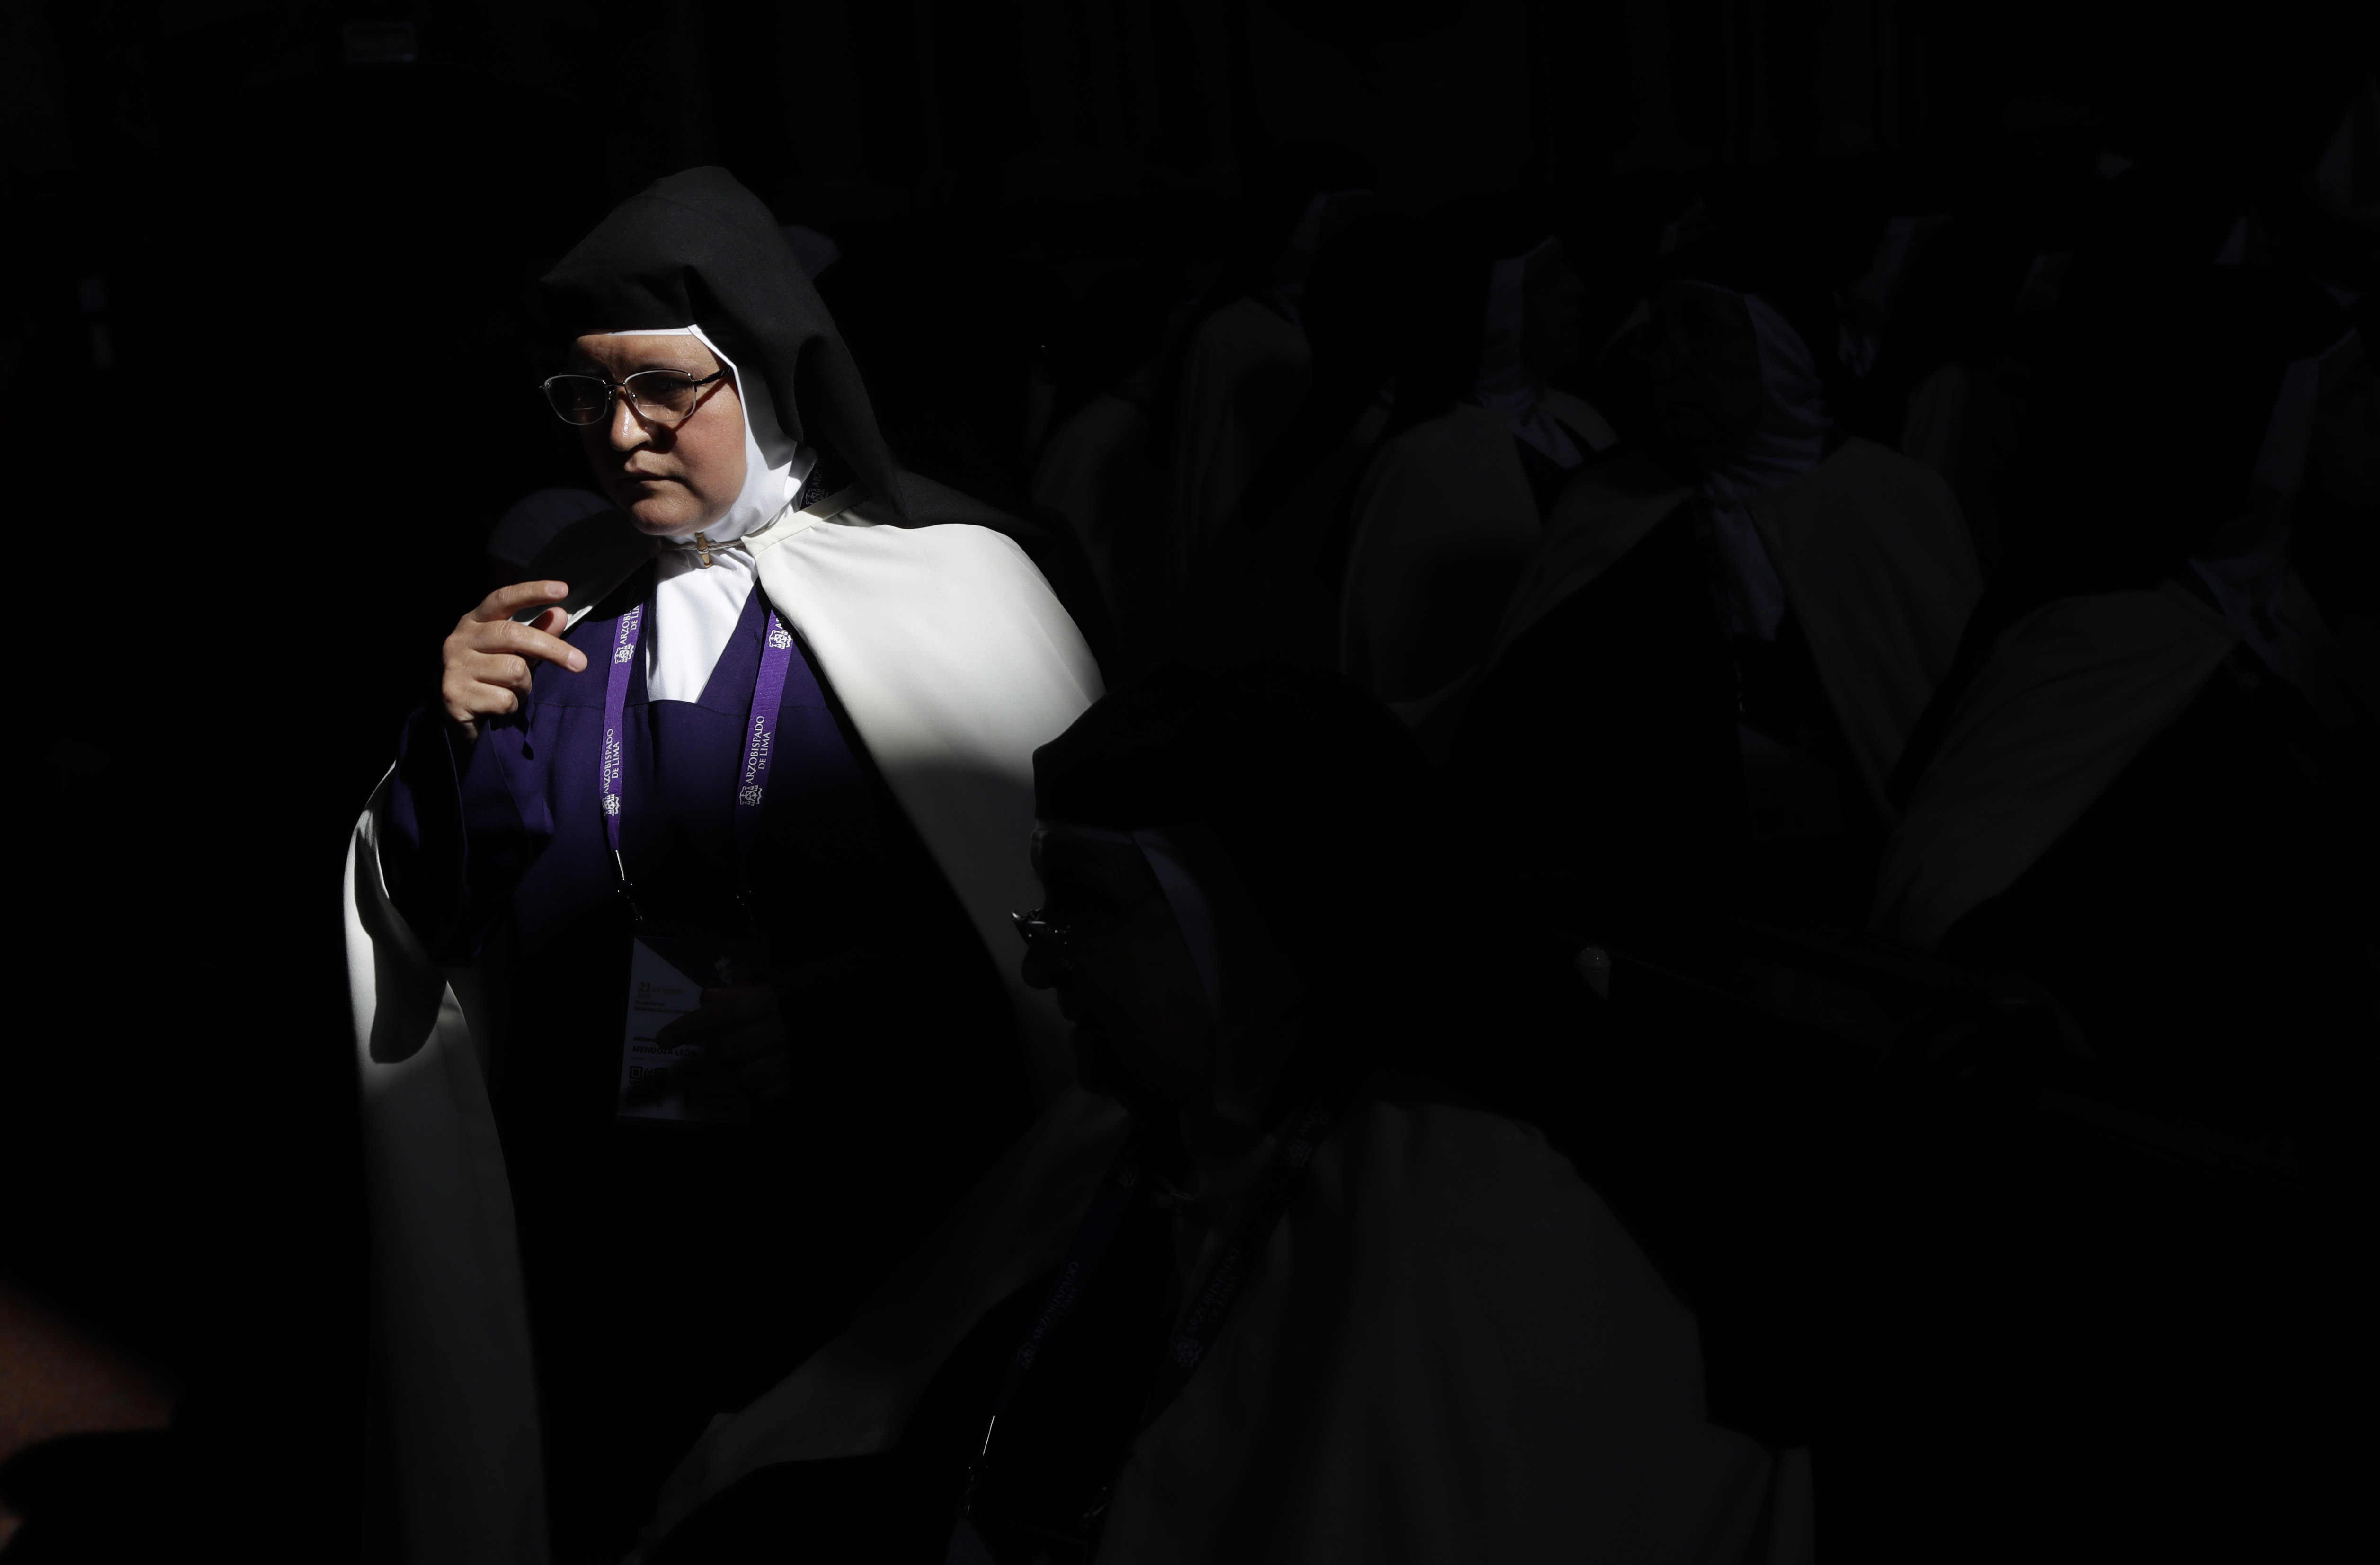 Monjas son tratadas como sirvientas por obispos y cardenales, denuncia revista vaticana